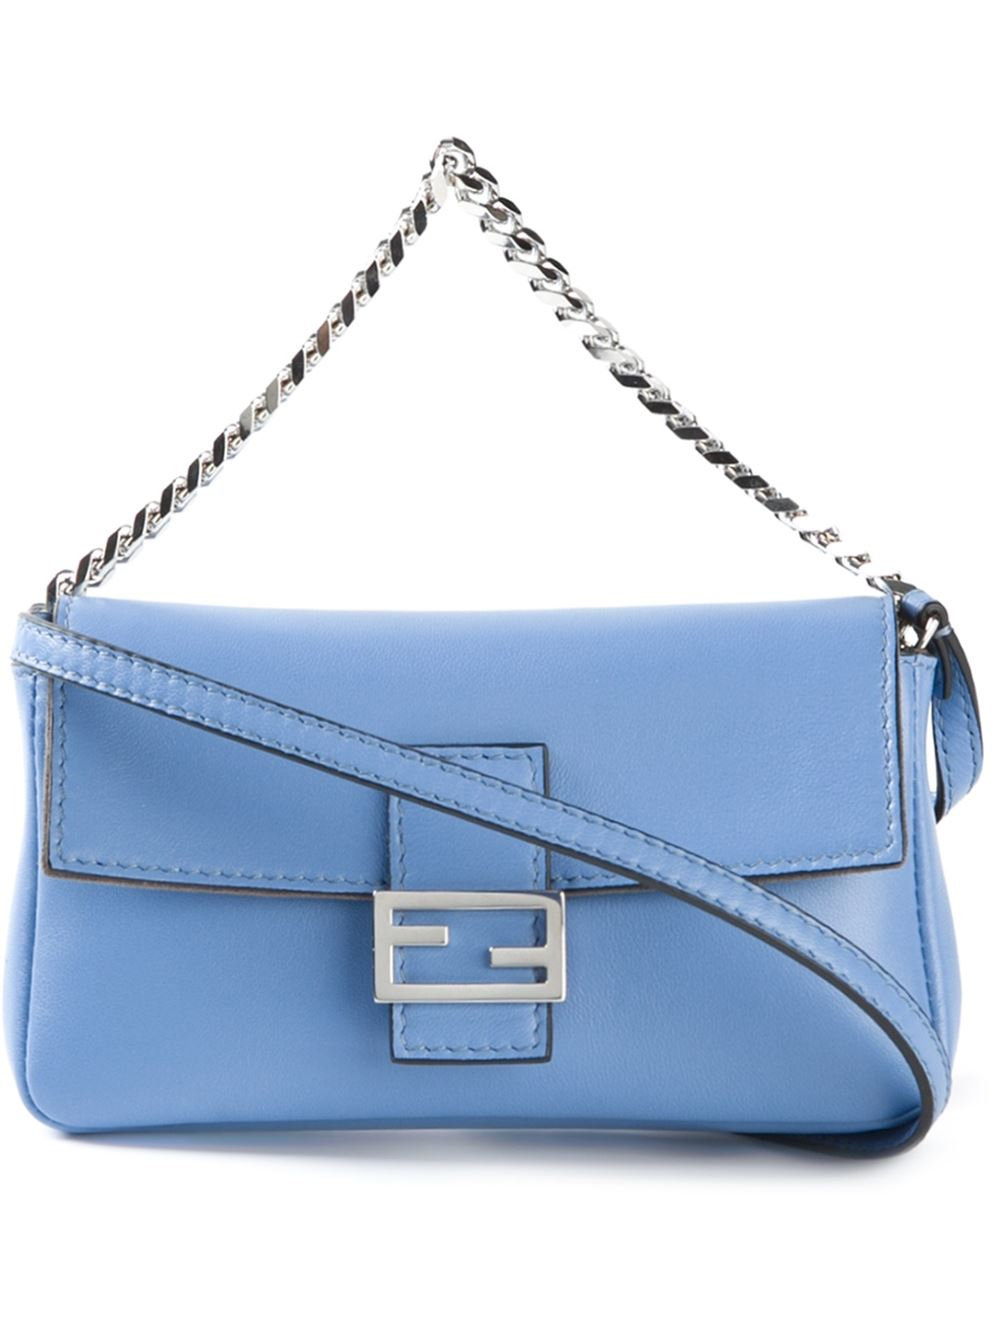 Fendi Blue Handbag | semashow.com